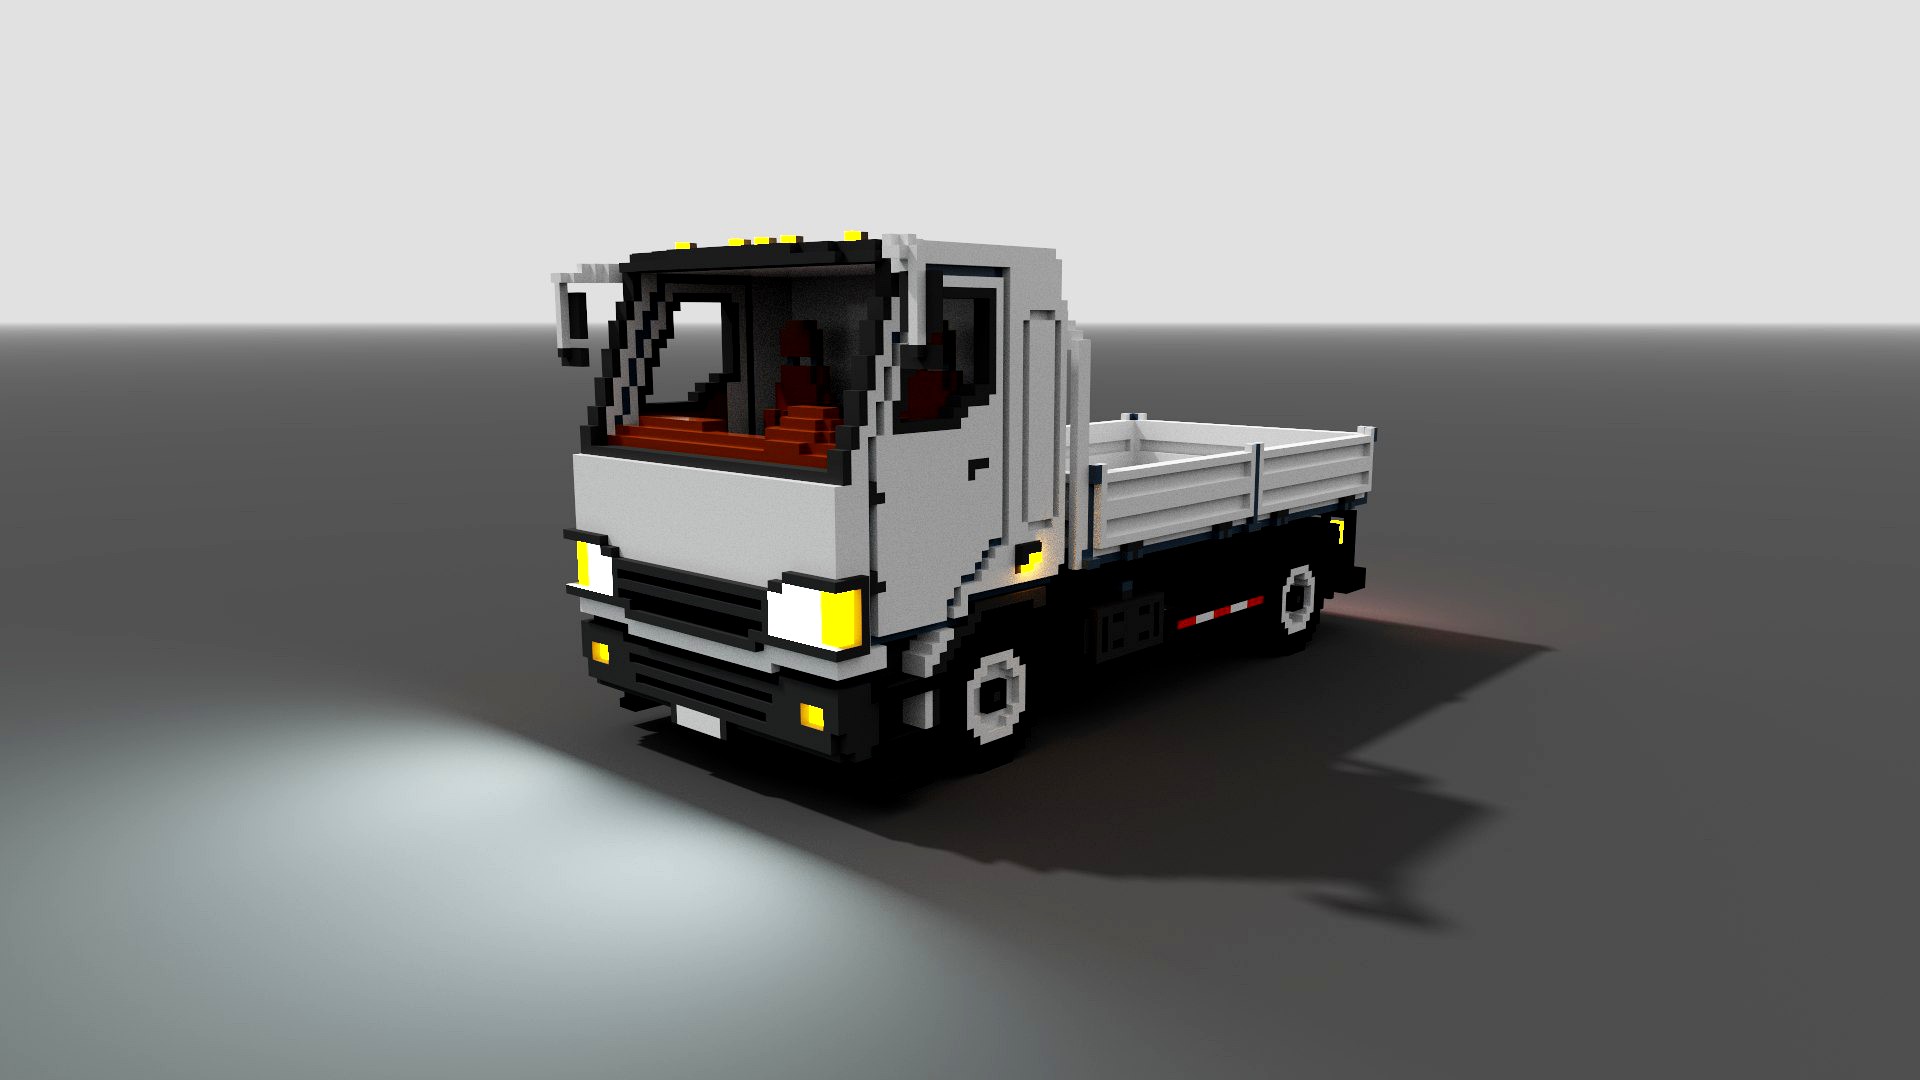 Voxel Flatbed Truck 3D model